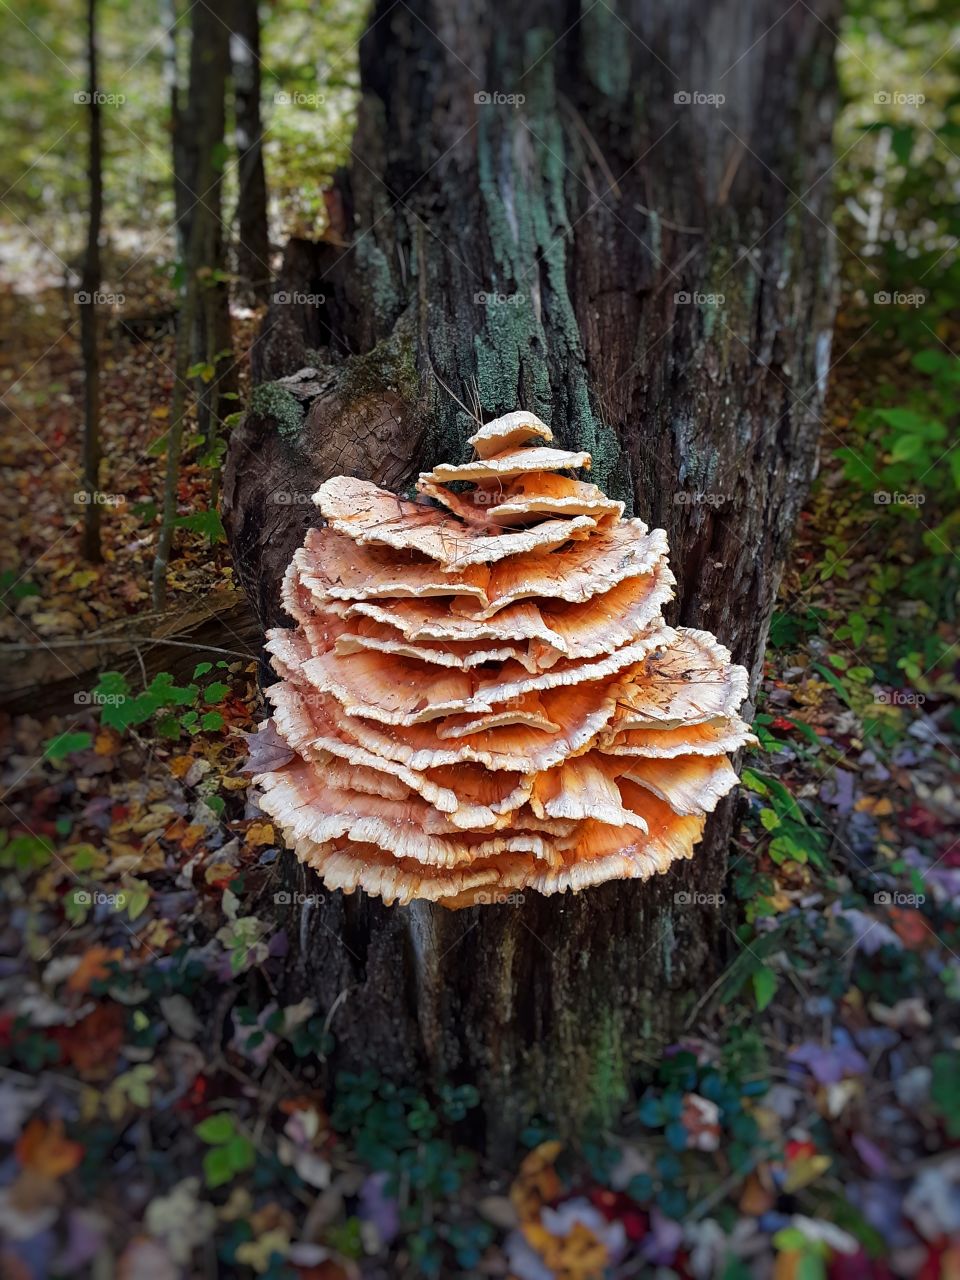 Chicken of the mushroom